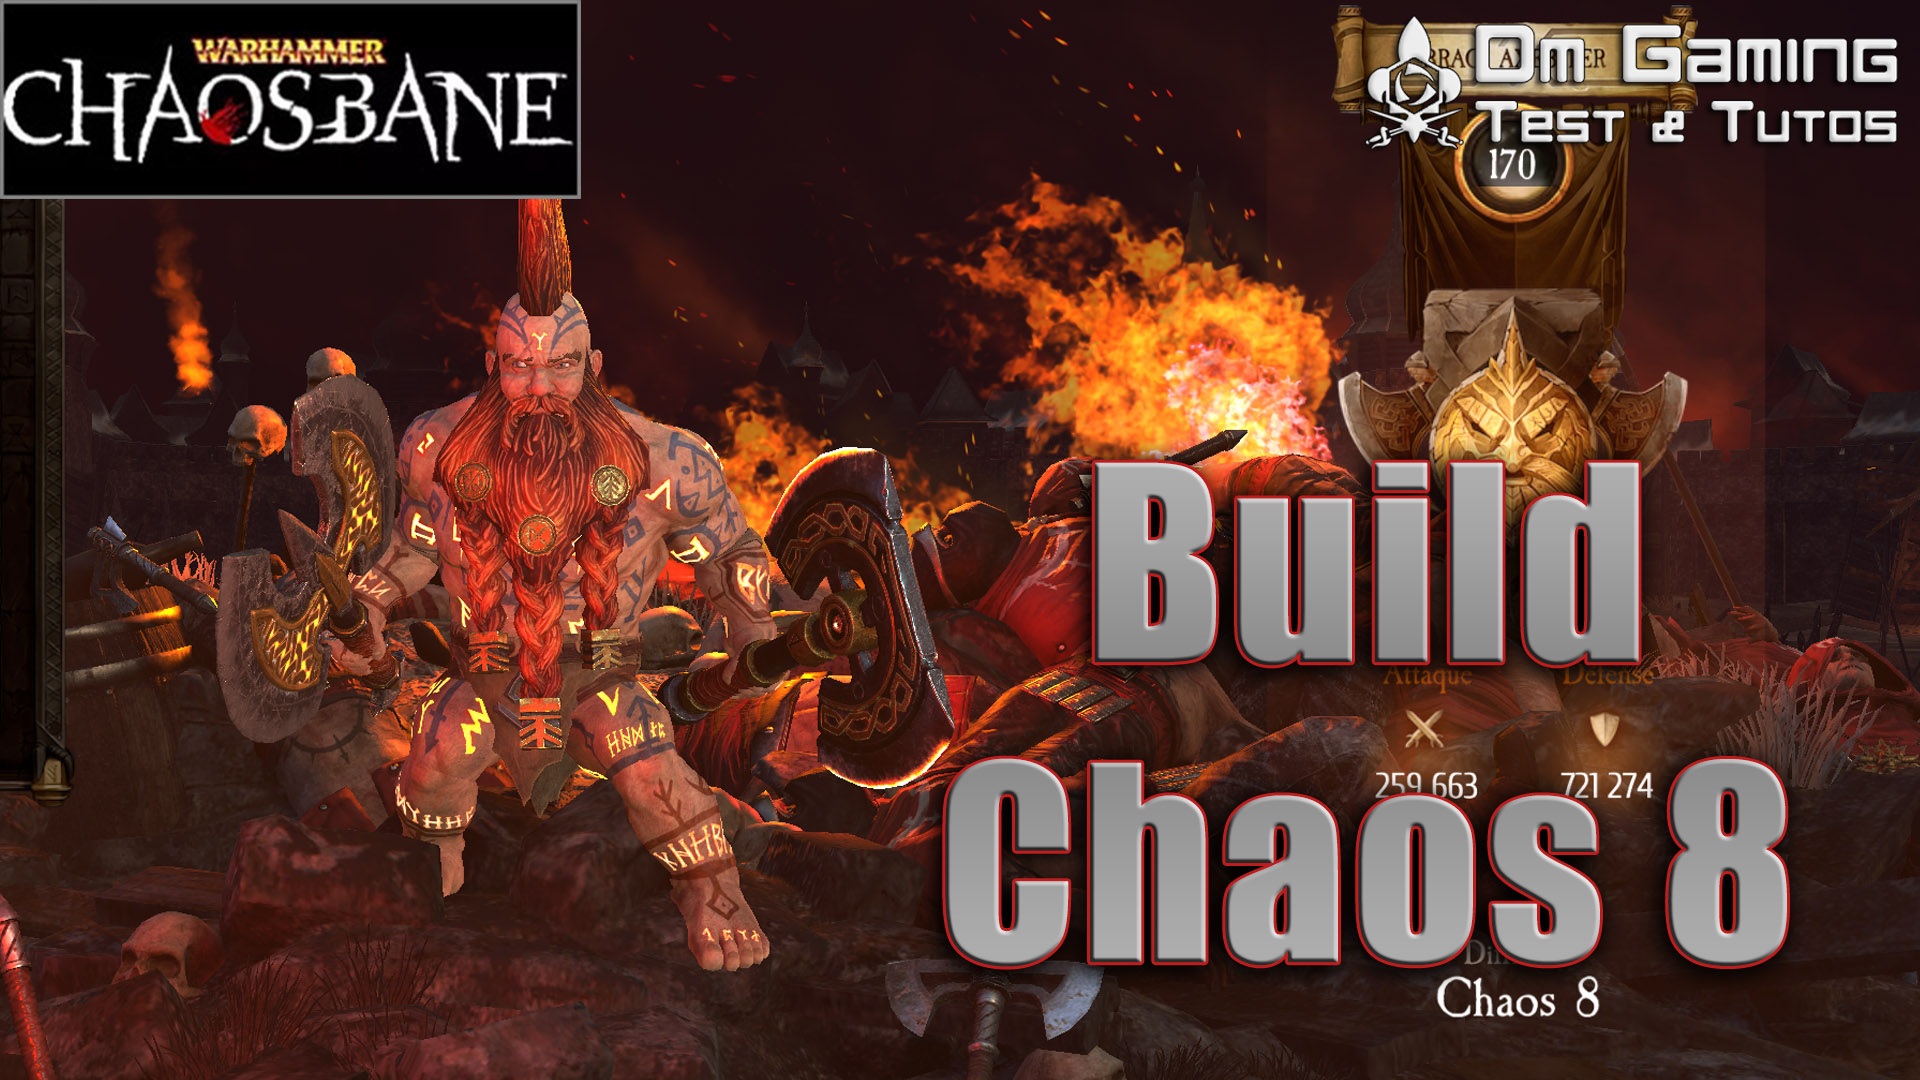 build chaos 8 warhammer chaosbane nain